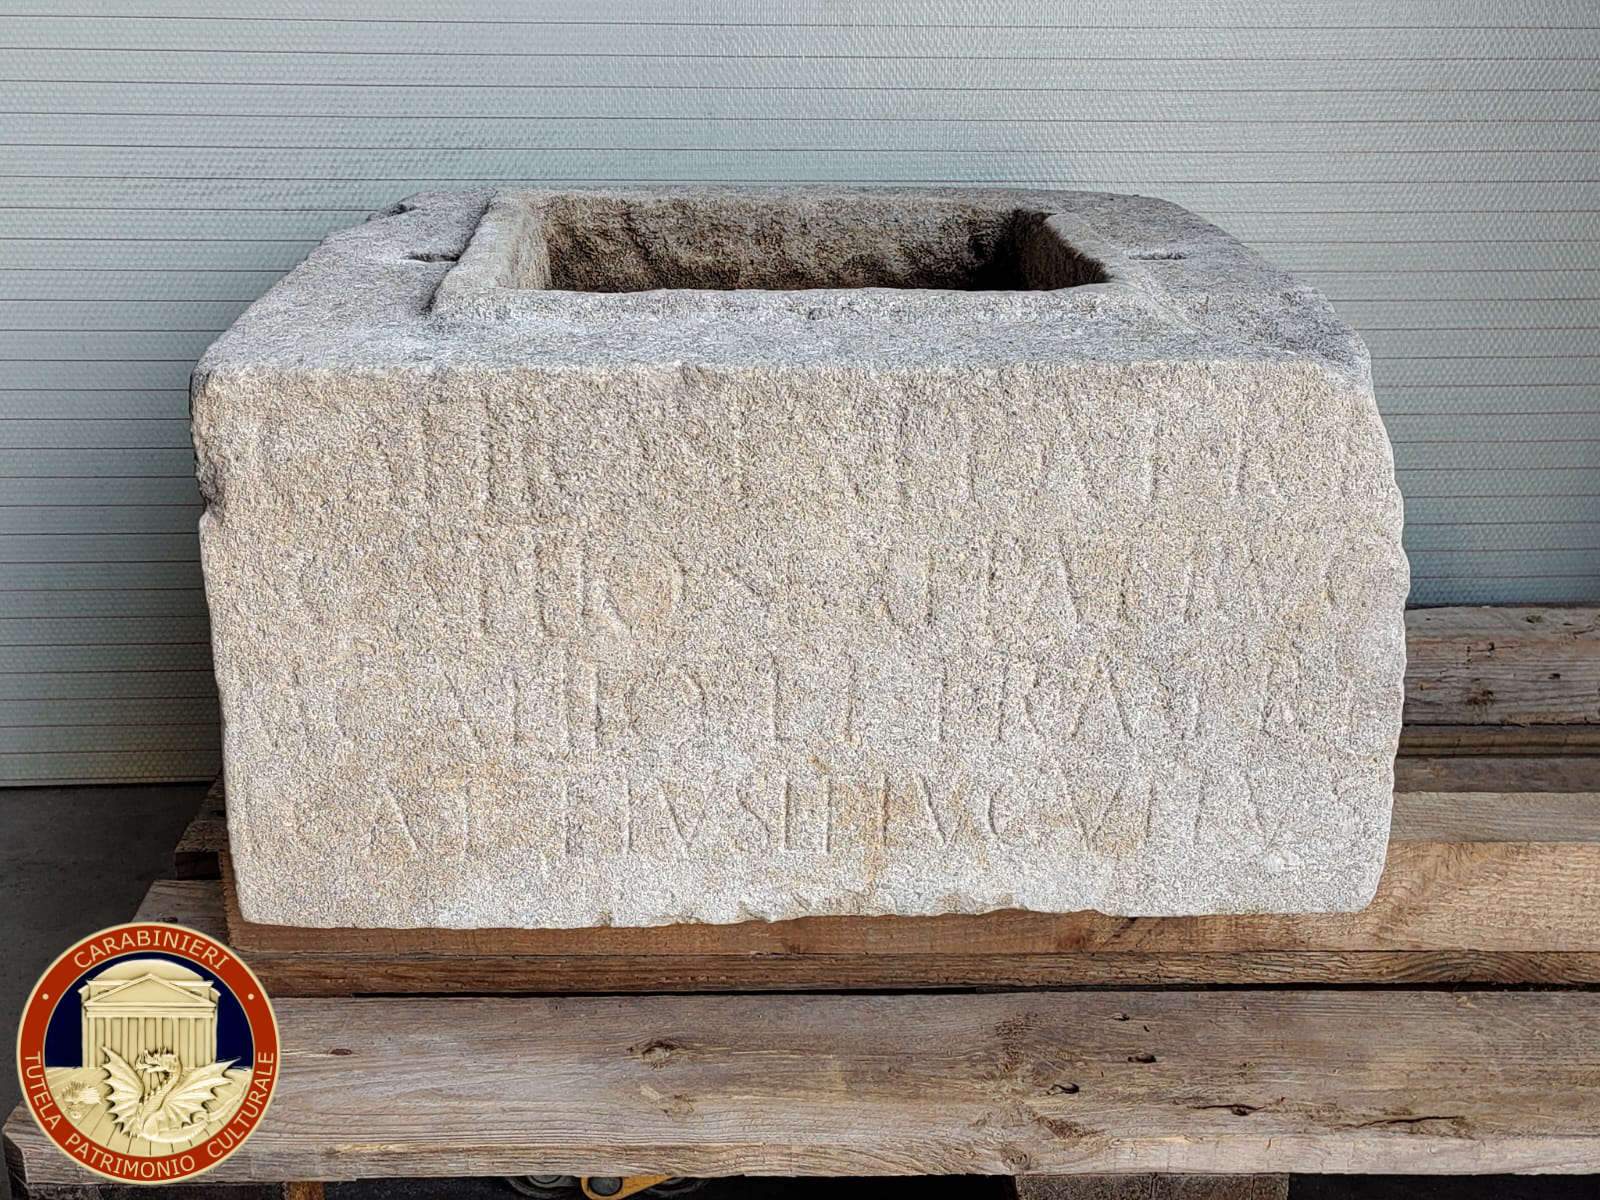 I Carabinieri consegnano al Museo Nazionale Concordiese una preziosa urna romana